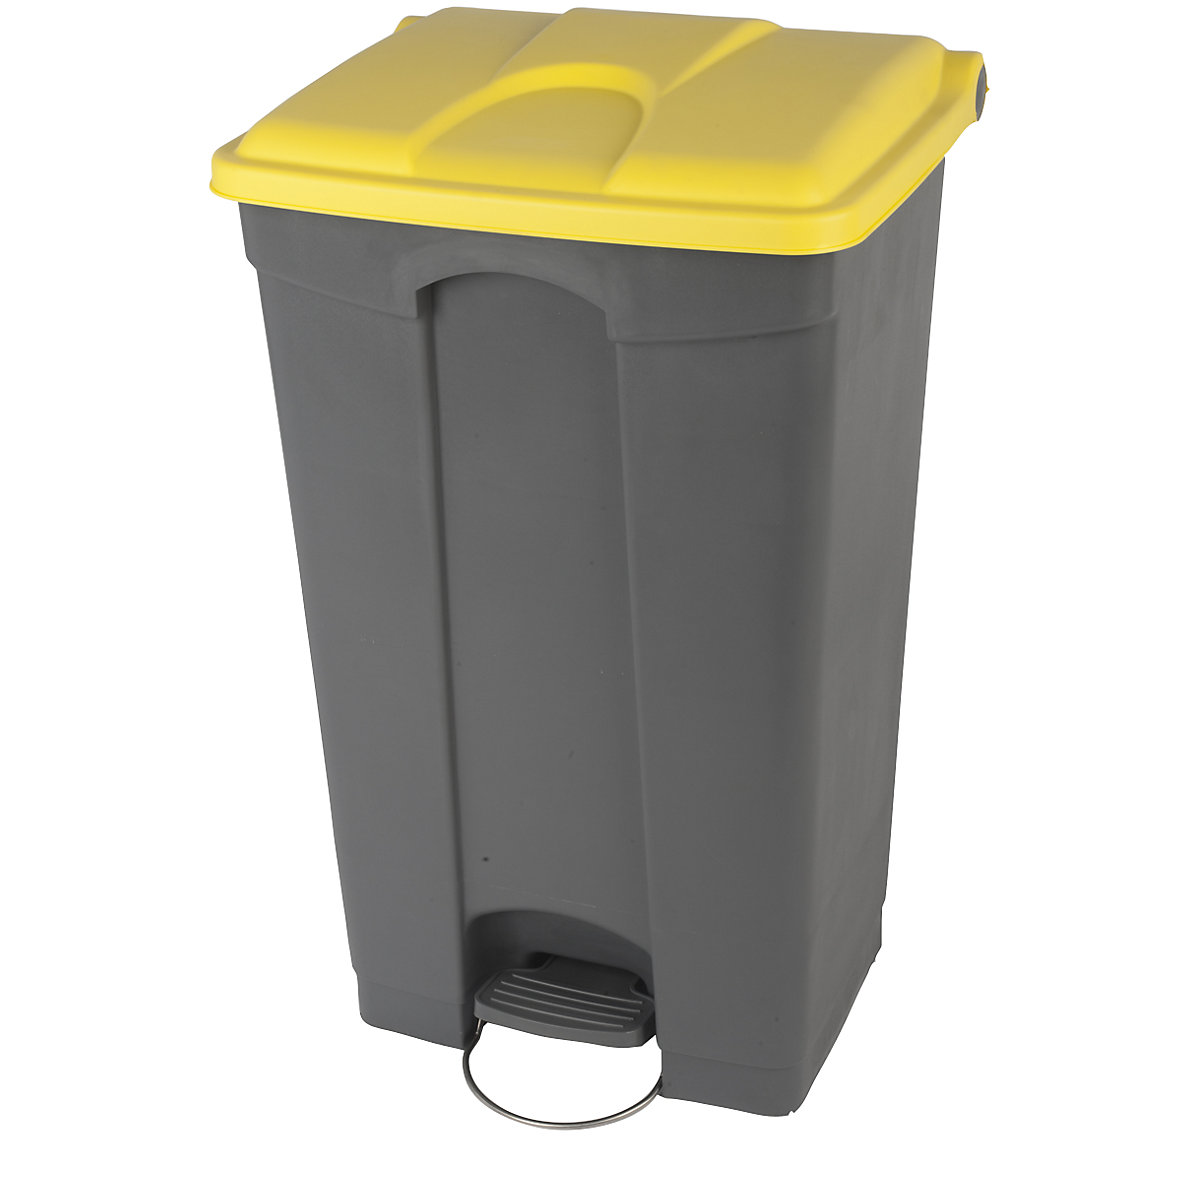 EUROKRAFTbasic – Nádoba na odpad s pedálem, objem 90 l, š x v x h 505 x 790 x 410 mm, šedá, žluté víko